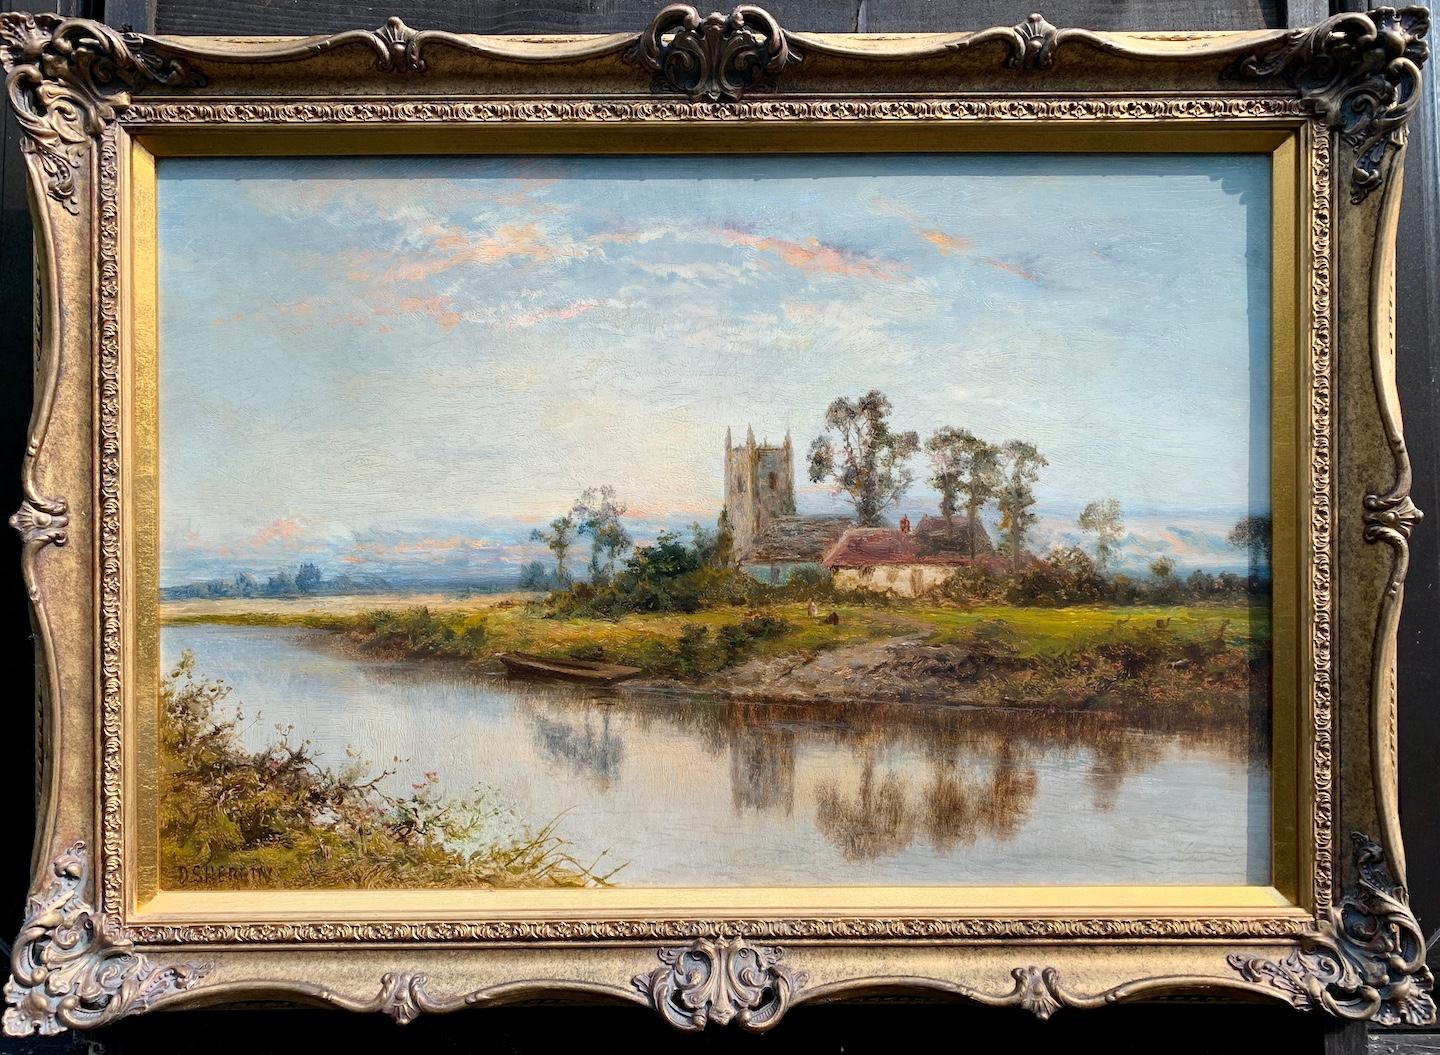 Ancienne huile sur toile, paysage anglais avec rivière, église, chalet au lever du soleil